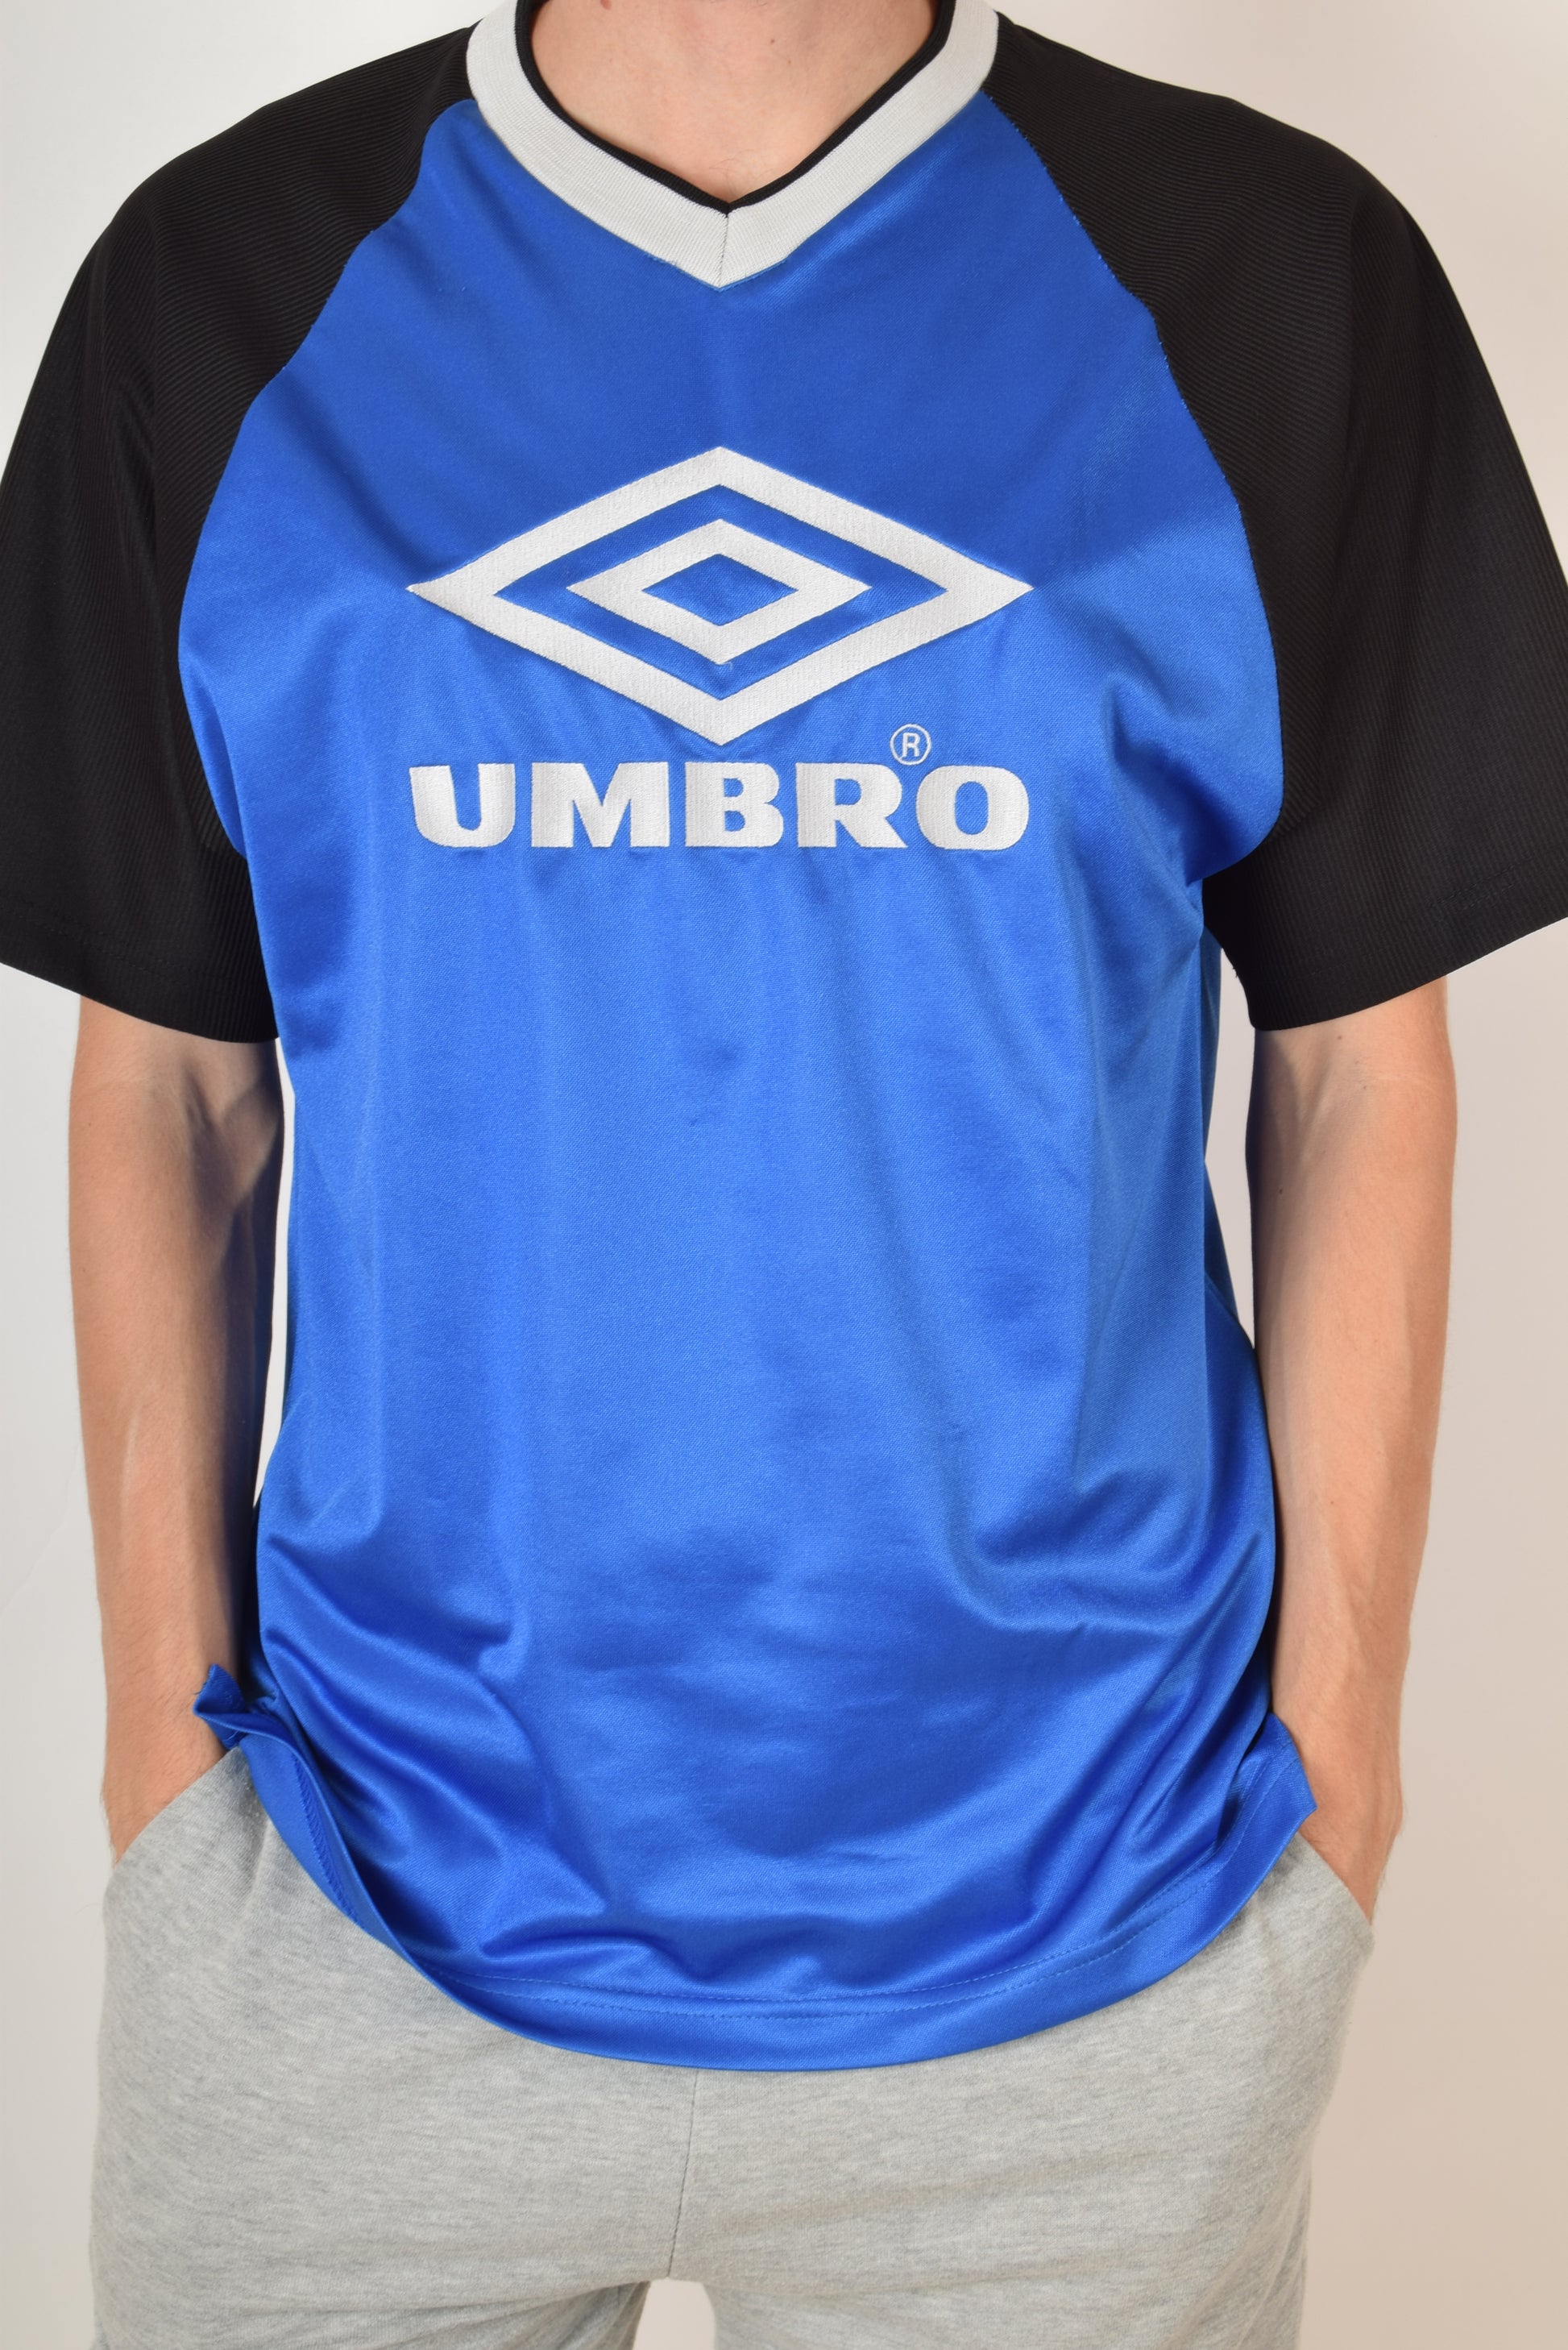 Vintage Umbro T-shirt Size M 